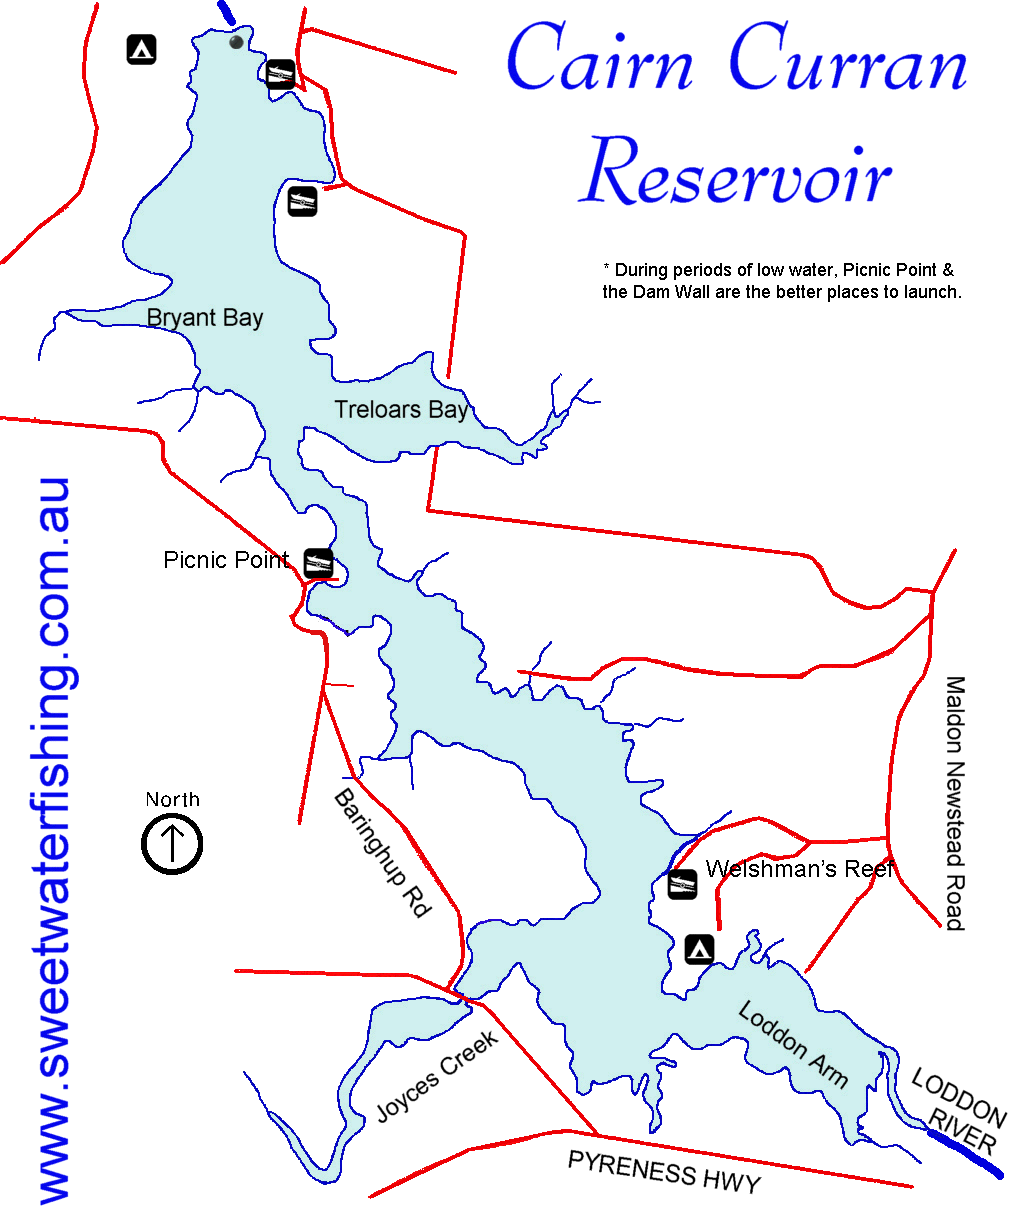 Cairn Curran Reservoir Map